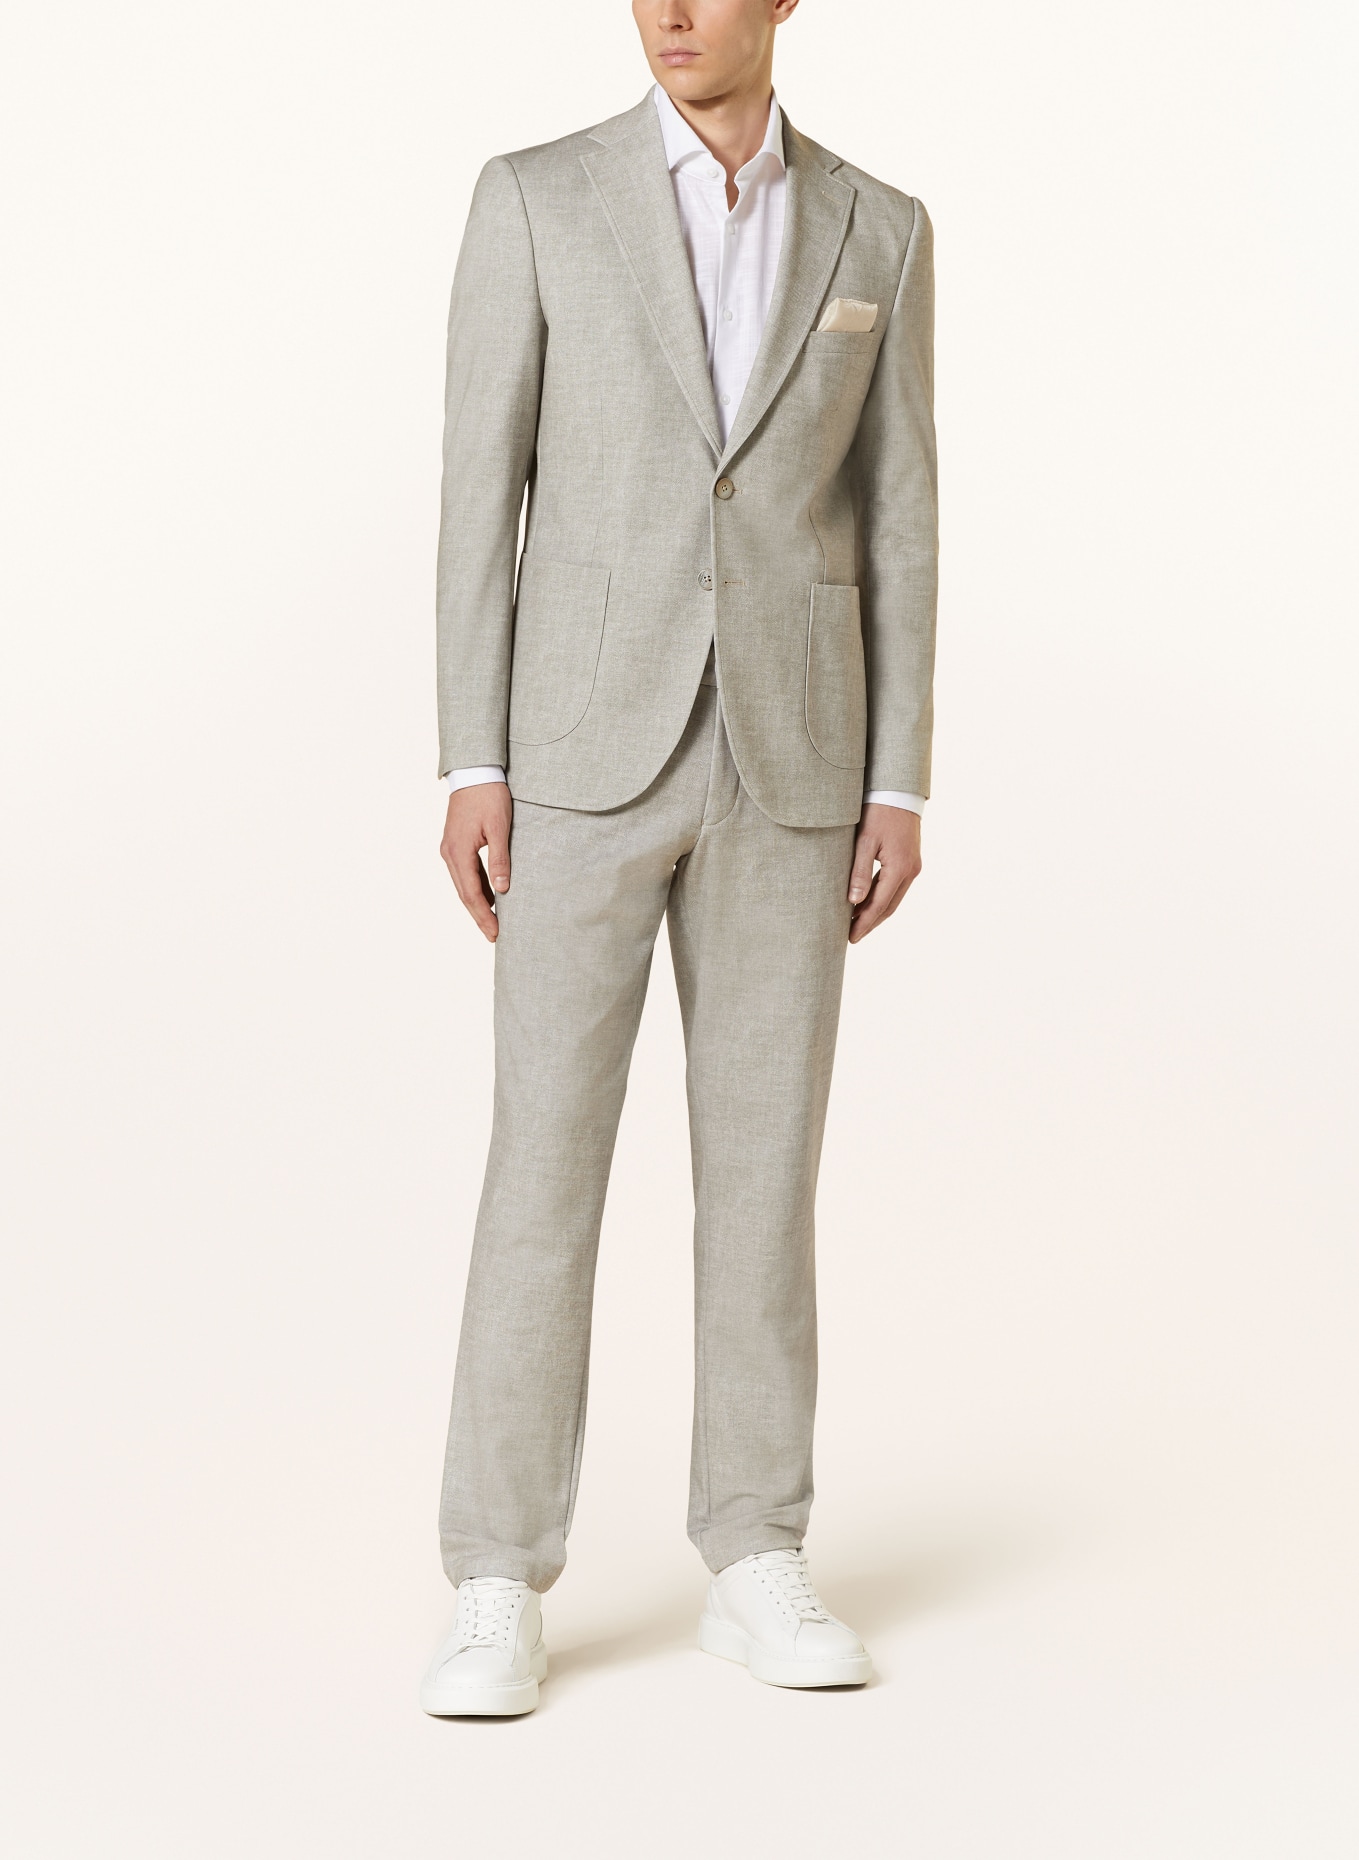 PAUL Suit jacket extra slim fit, Color: 220 SAND (Image 2)